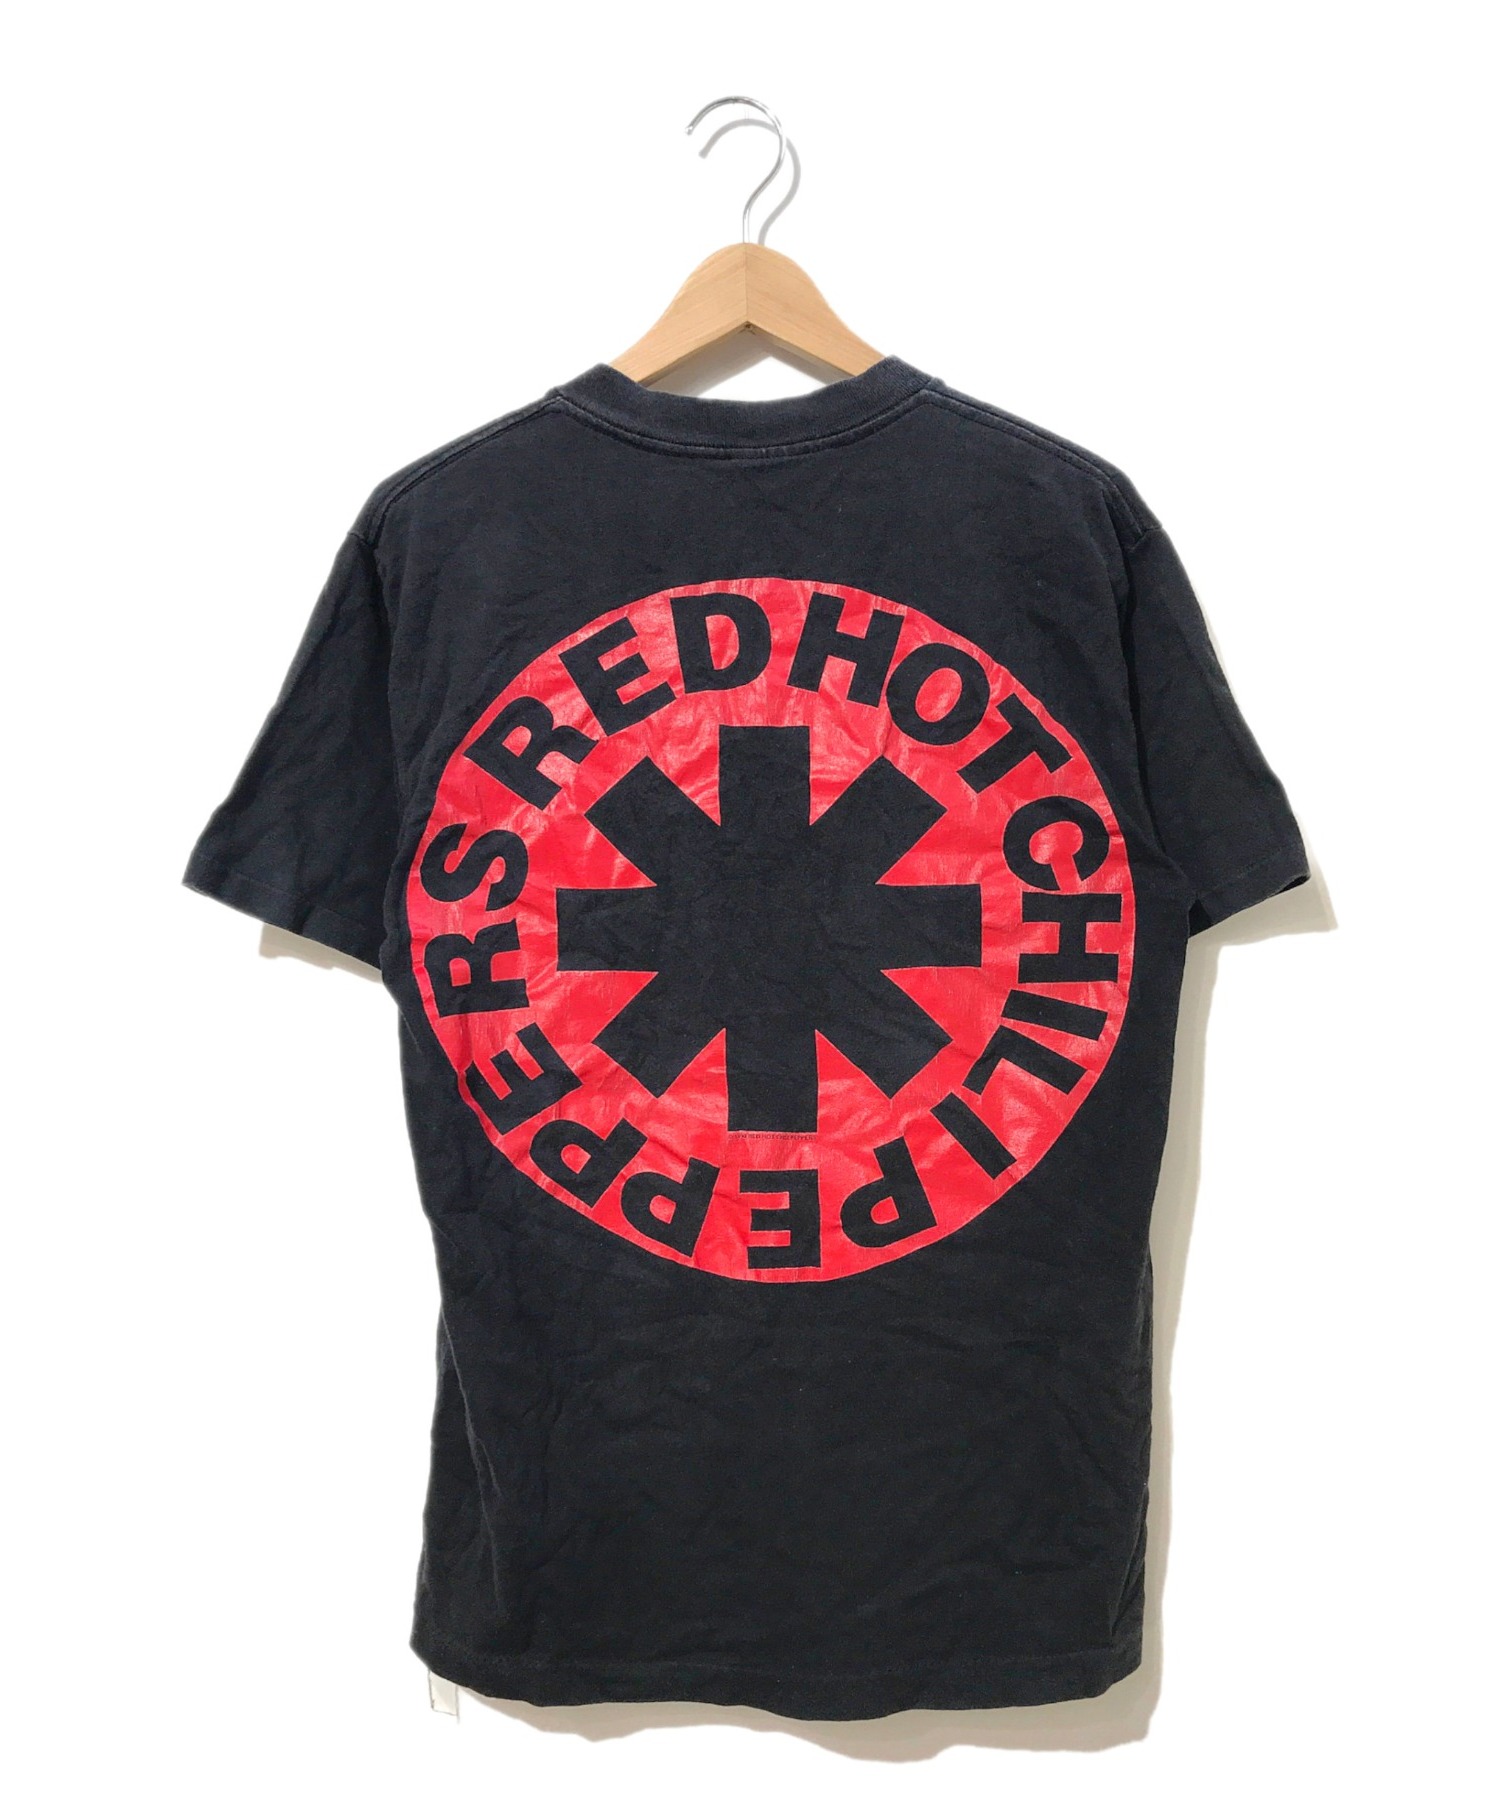 バンドTシャツ (バンドTシャツ) [古着]RED HOT CHILIPEPERSバンドTシャツ ブラック サイズ:M  1990年・レッチリ・レッドホットチリペッパーズ